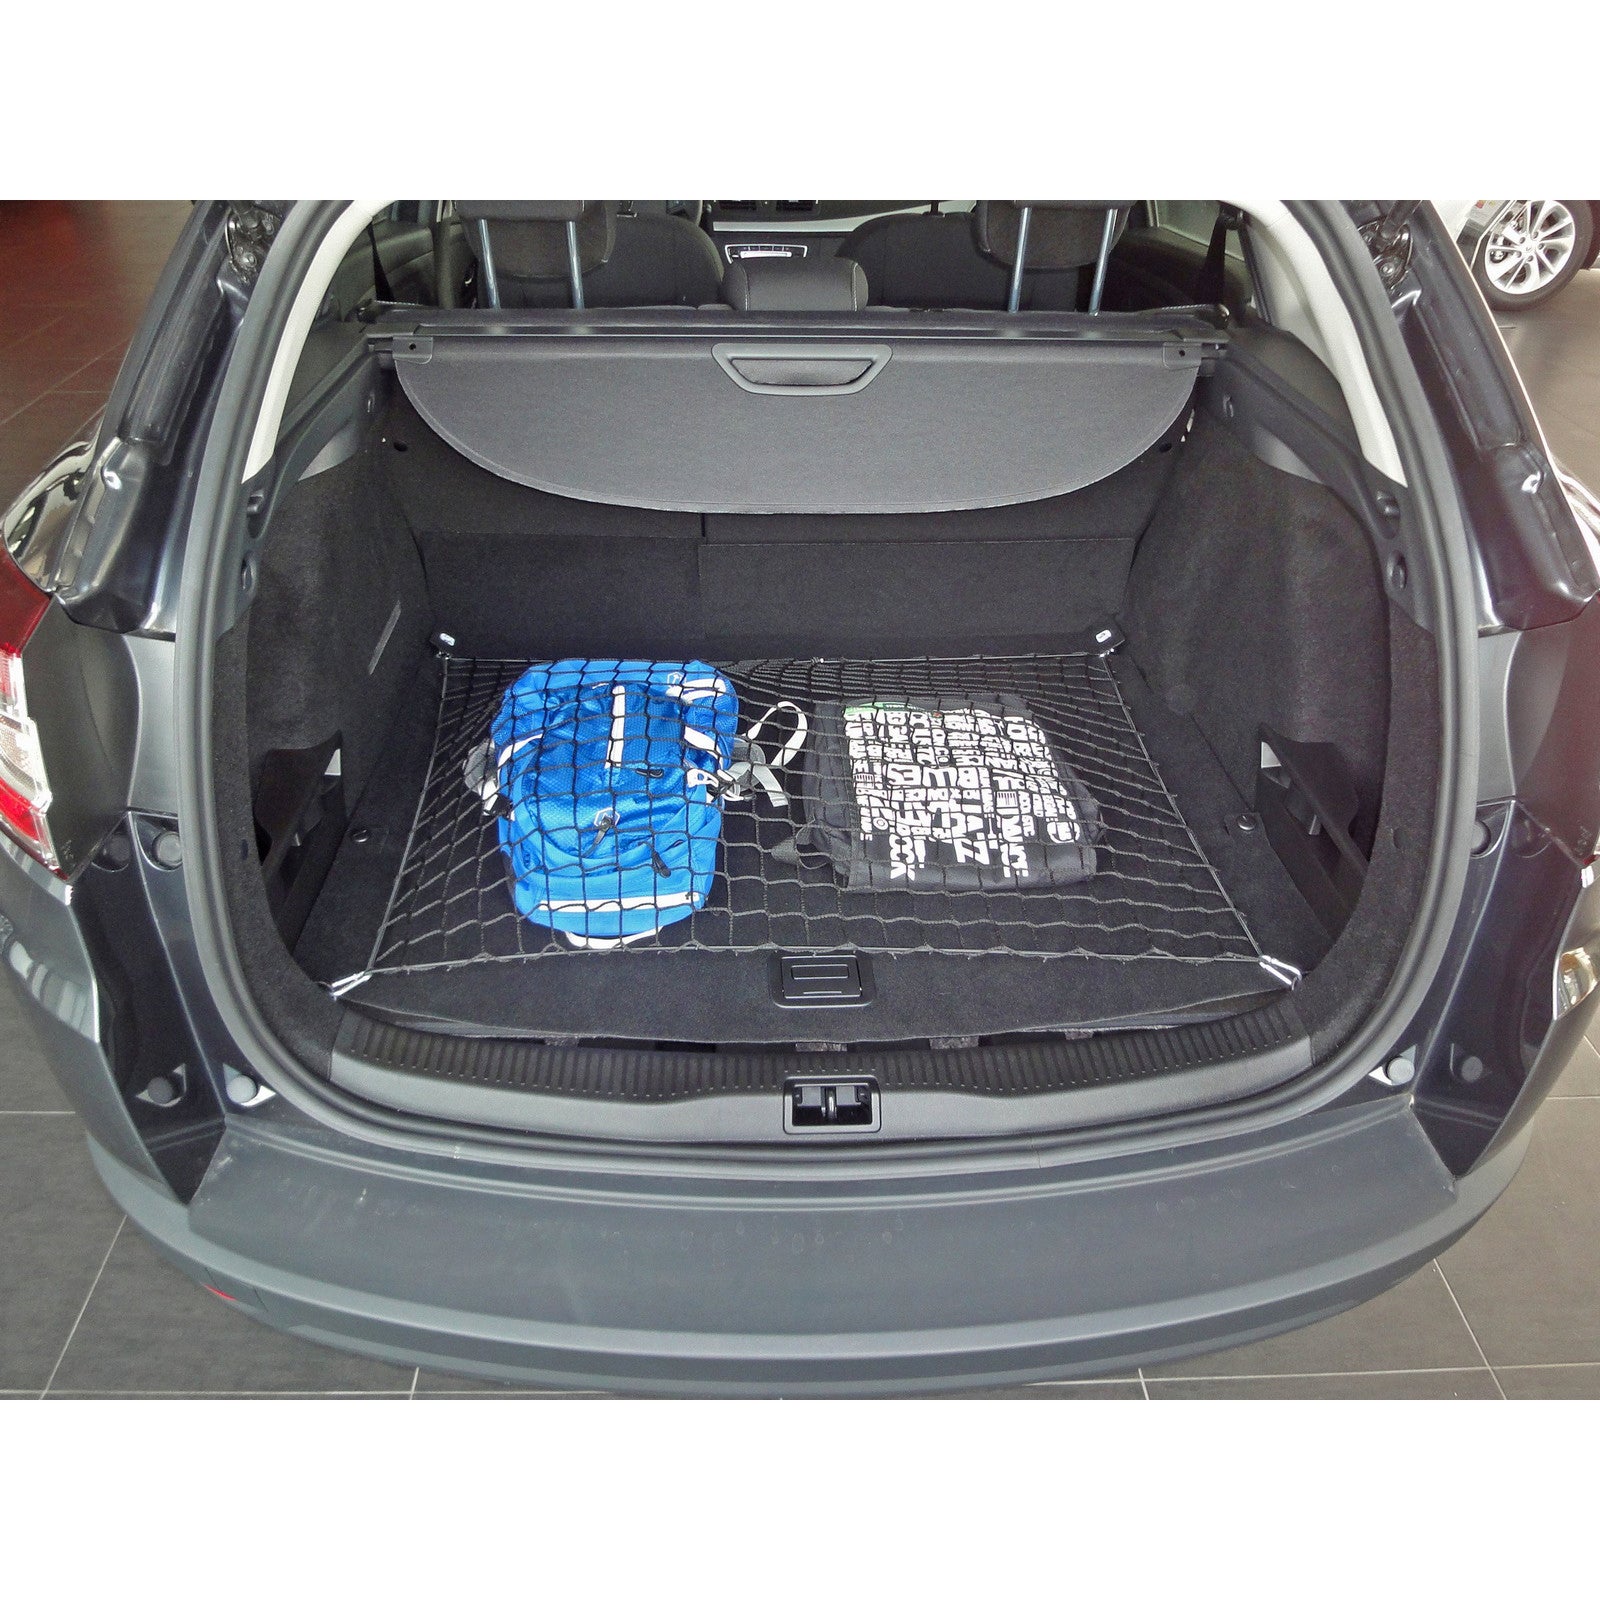 Autosiatki Kofferraumbodennetz Netz Gepäcknetz für Renault Megane 3 Gr –